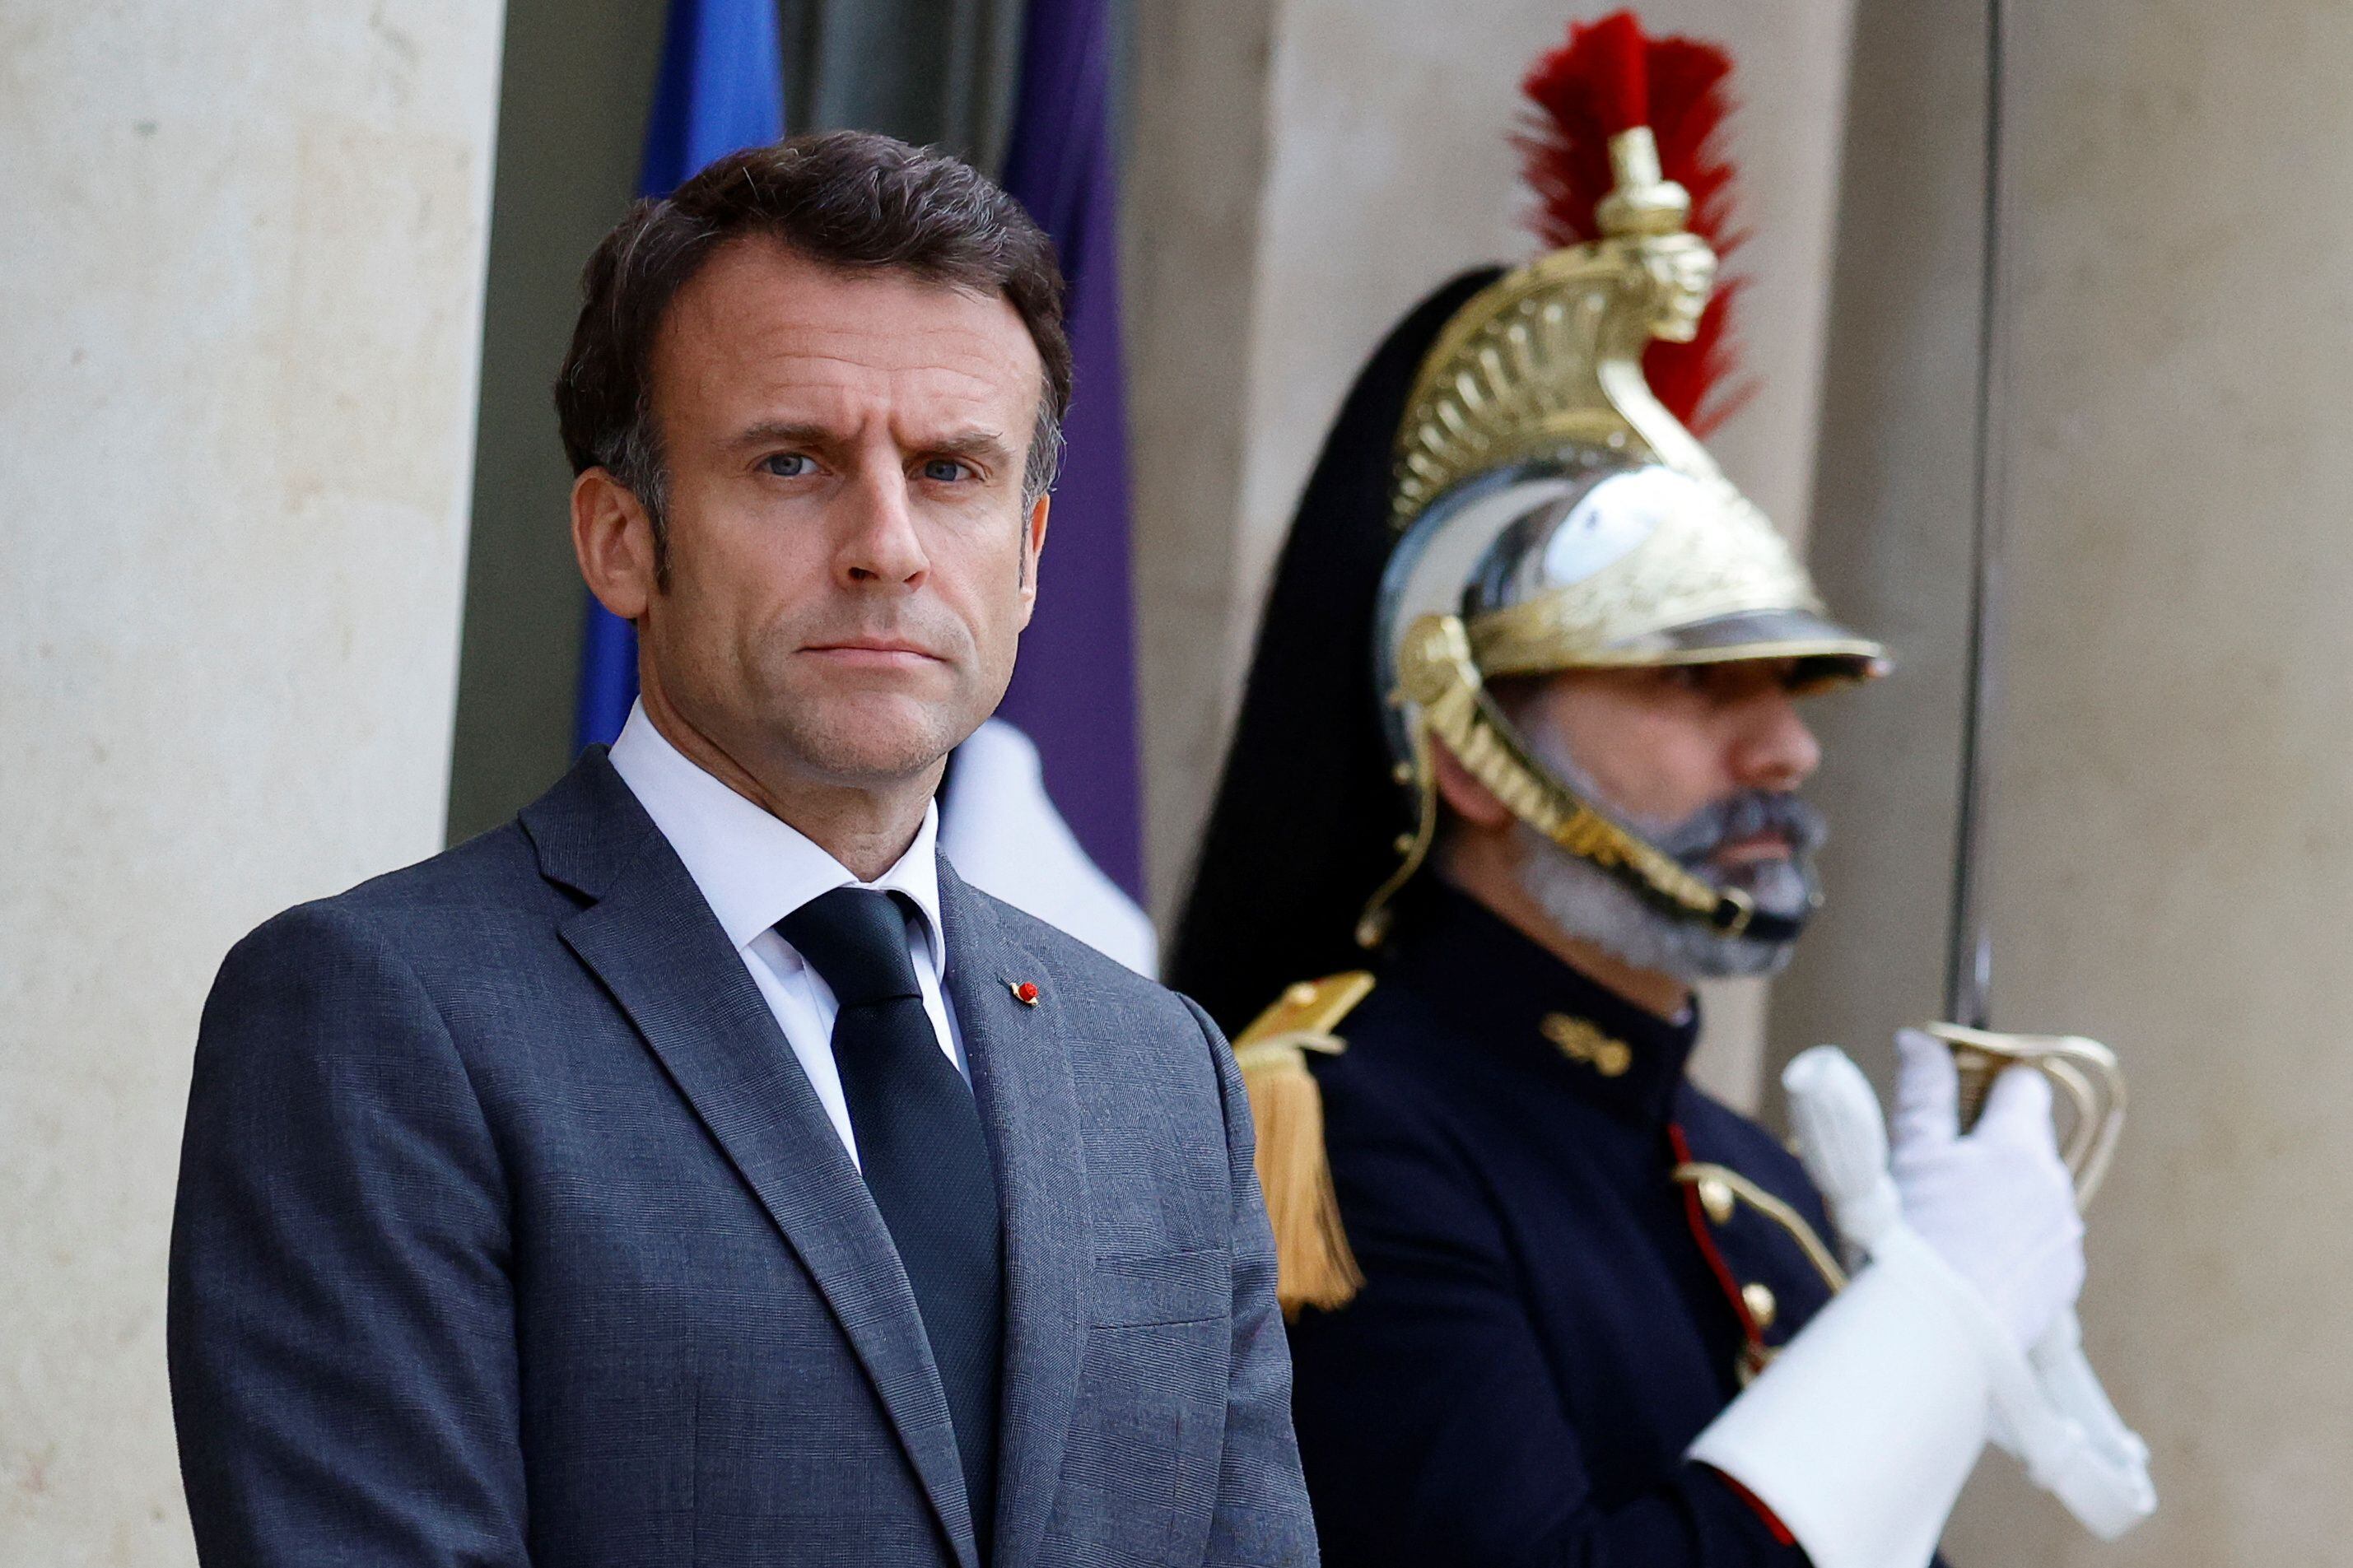 El presidente francés, Emmanuel Macron, calificó de “alivio” la puesta en libertad de estos dos ciudadanos (REUTERS/Sarah Meyssonnier)